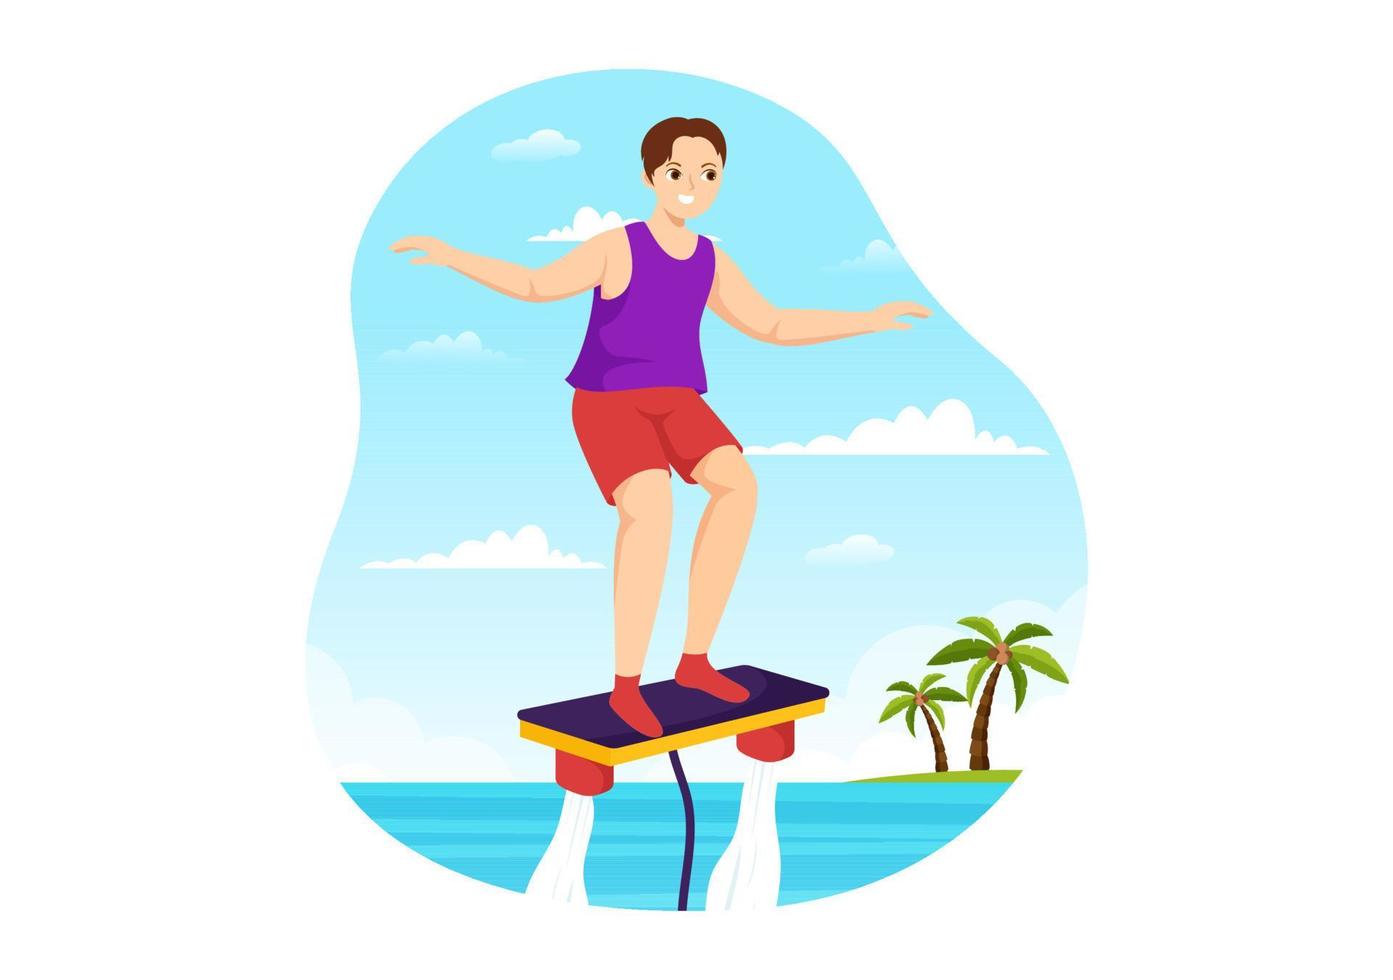 flyboard illustrazione con persone equitazione Jet imballare nel estate spiaggia vacanze nel piatto estremo acqua sport attività cartone animato mano disegnato modelli vettore